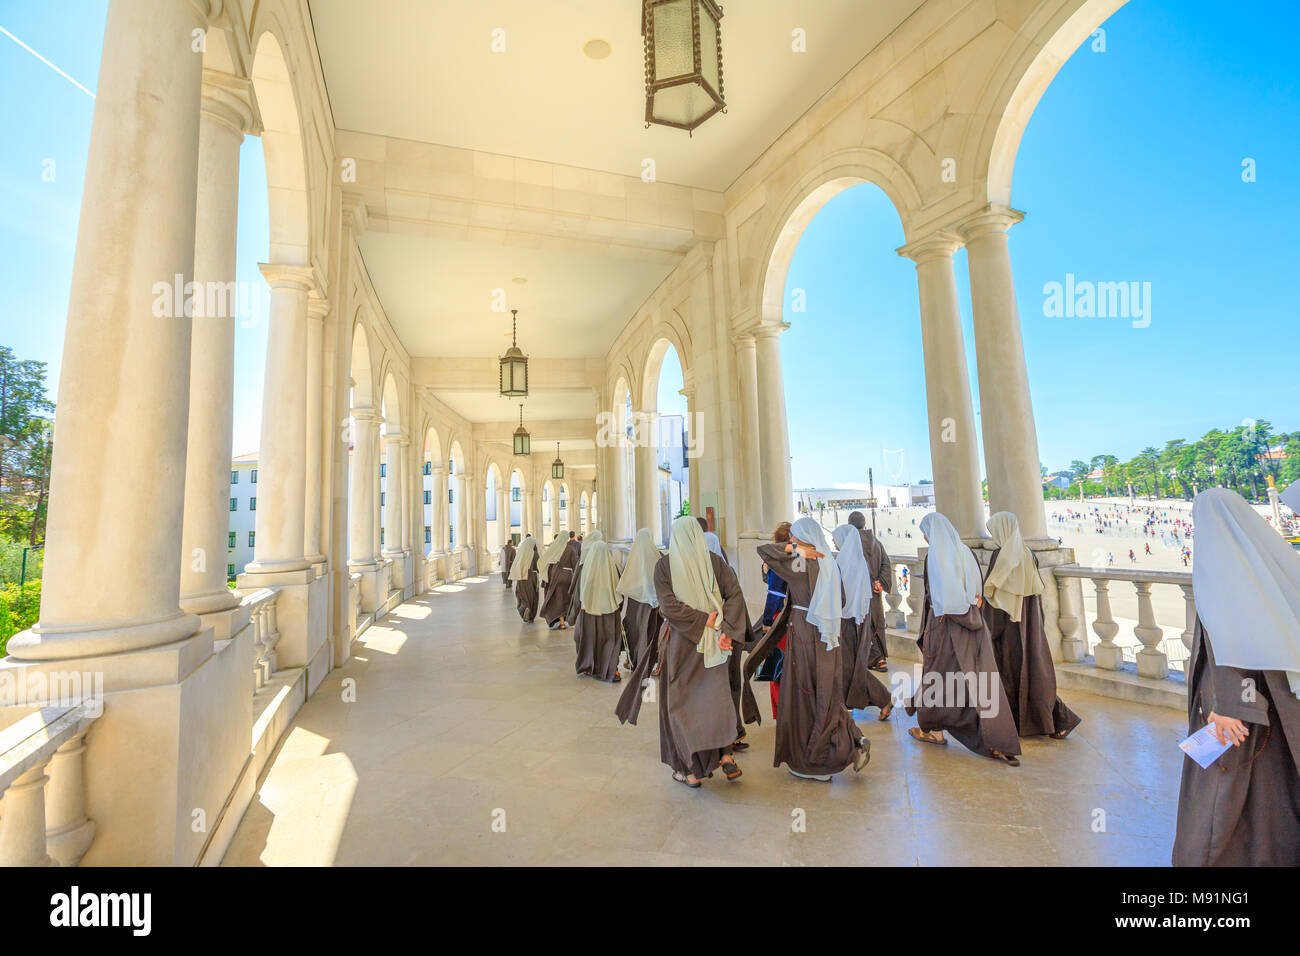 Fatima, Portugal - 15 août 2017 : groupe de religieuses promenades sous arcade au Sanctuaire de Notre-Dame de Fatima, l'un des plus importants sanctuaires mariaux et lieux de pèlerinage pour les catholiques. Banque D'Images